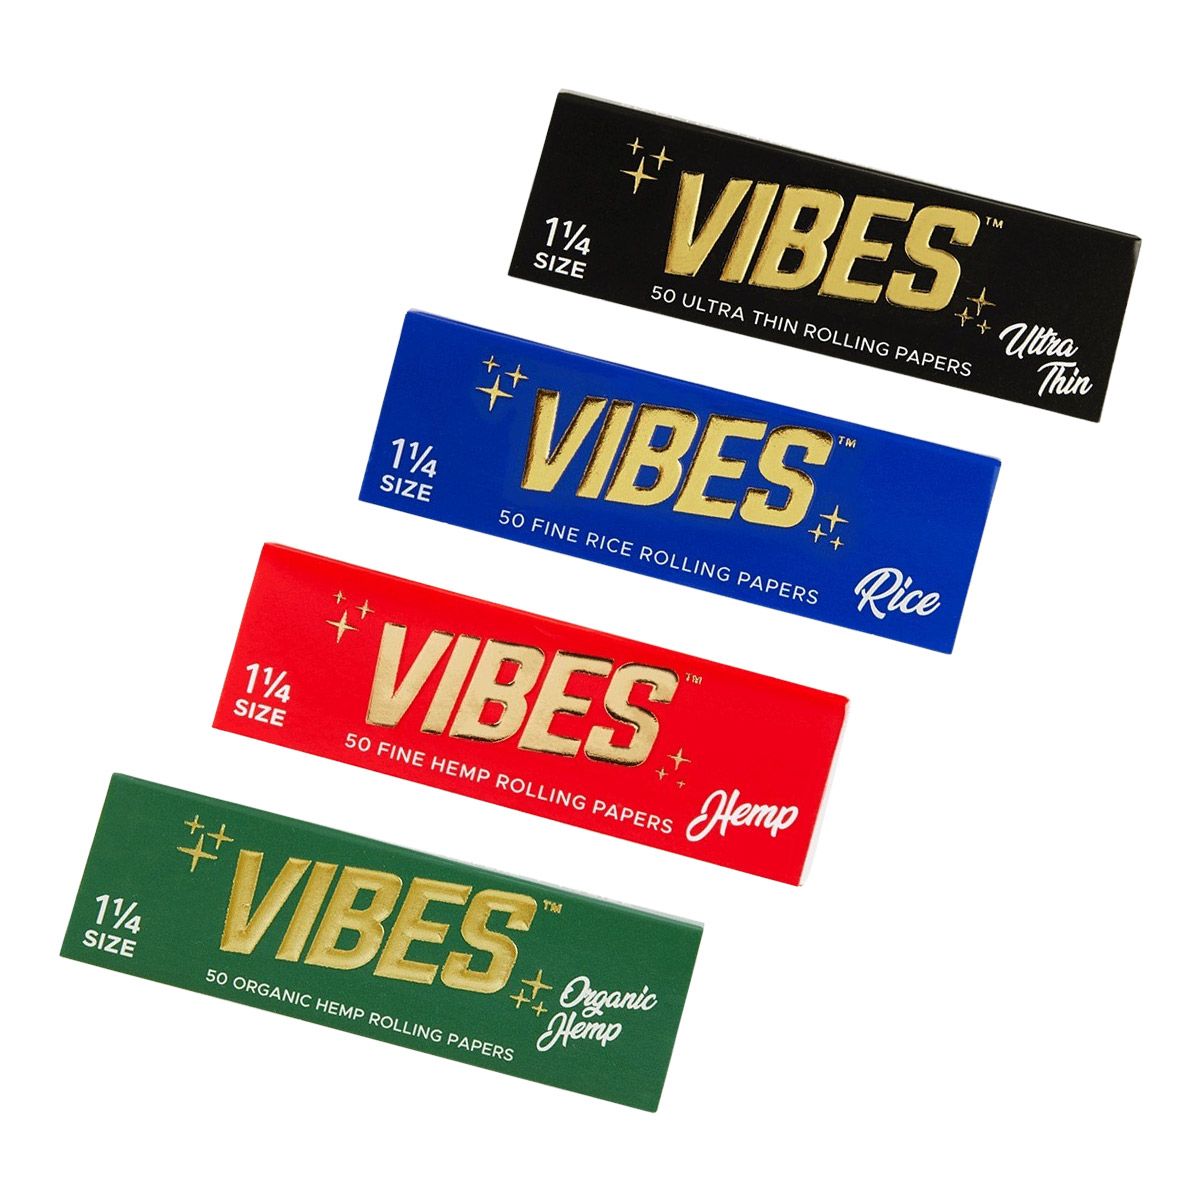 VIBES Rolling Papersの色別違い🪄

定番『VIBES（バイブス）』のペーパーは、チェンマイ店でも取扱中🚀

Cookies の創始者でありインフルエンサー、ラッパーの起業家 Berner が立ち上げた VIBES は、誰もが認めるハイクラスペーパーブランドです。

📍製造と加工
VIBES